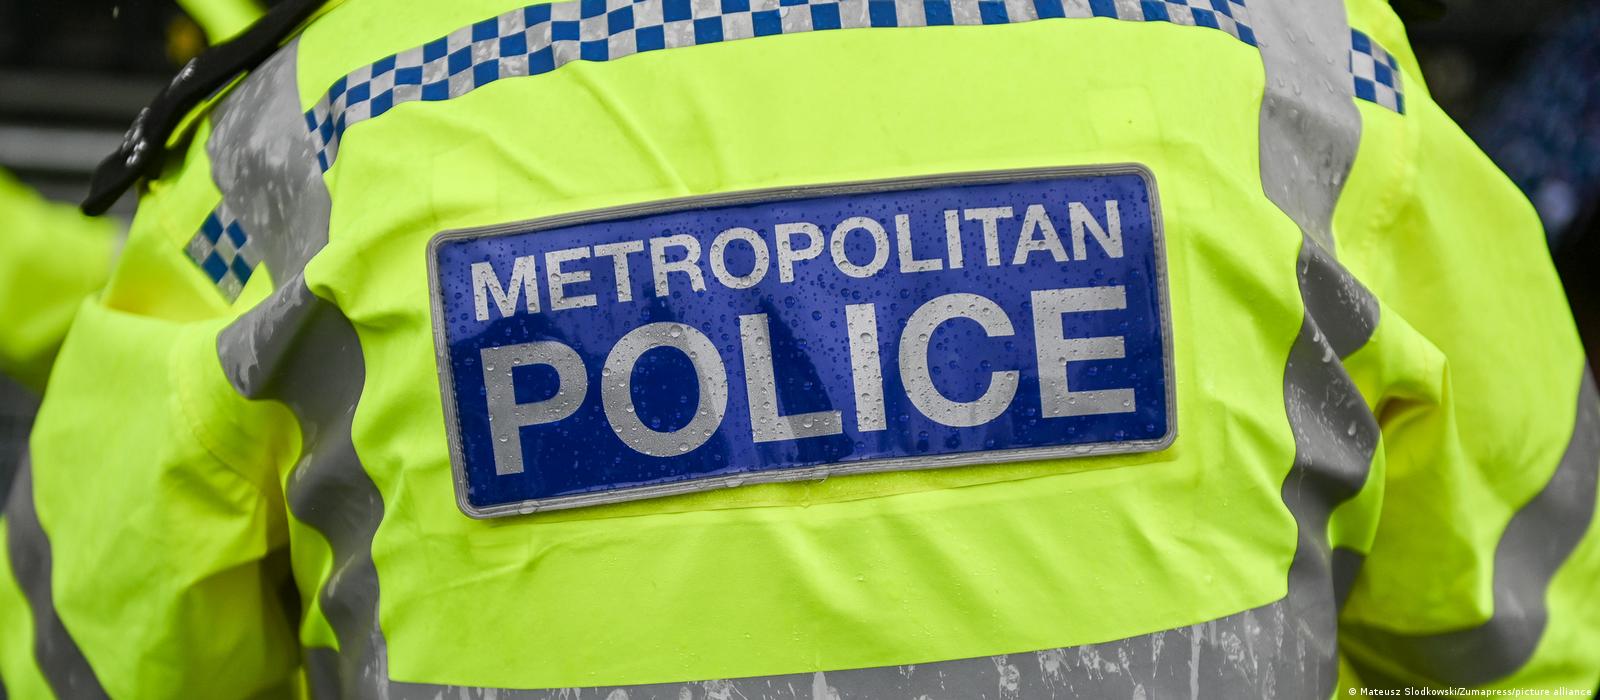 London’s Metropolitan Police lets predators flourish, review concludes